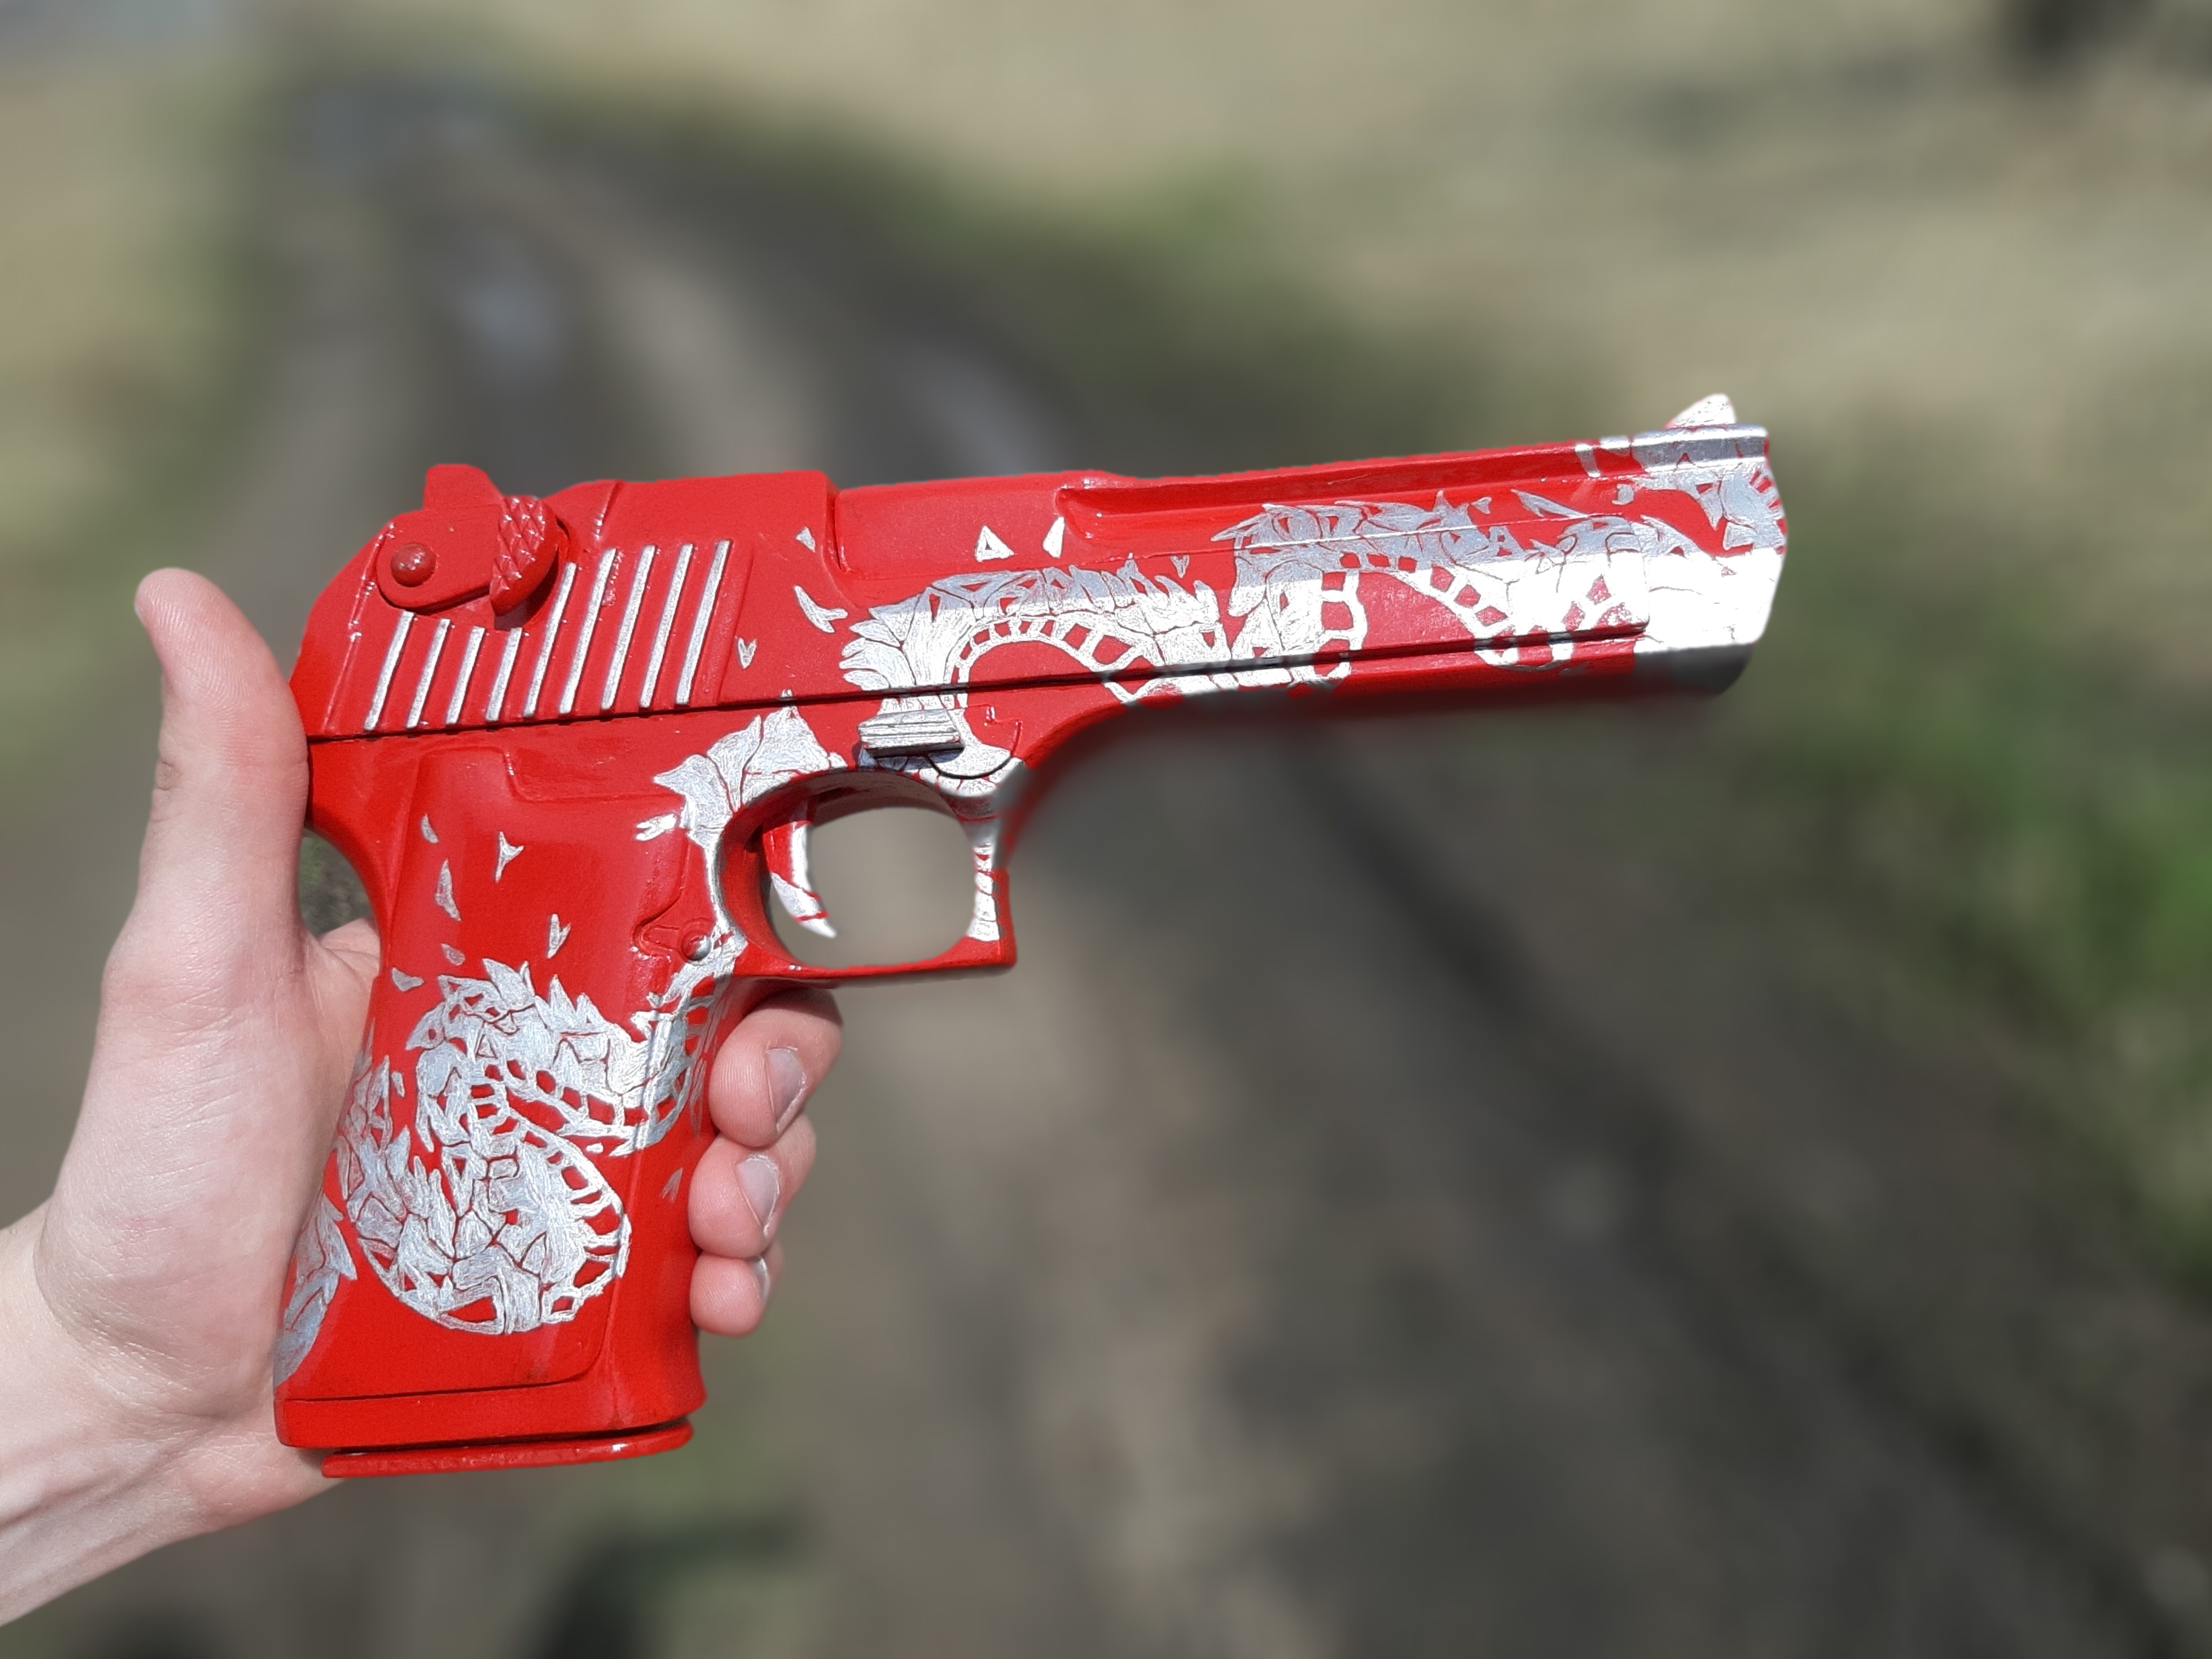 Своими руками - макет пистолета Desert Eagle Red dragon из игры Standoff 2. - Изображение 1